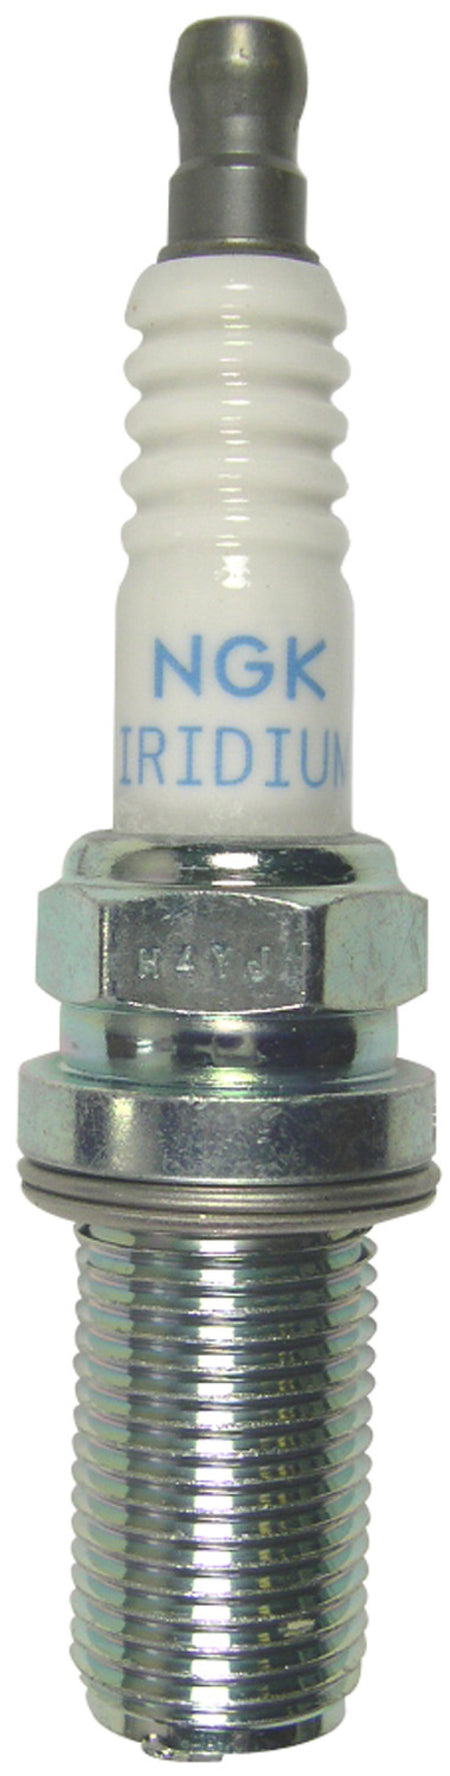 NGK Racing Spark Plug Box of 4 (R7438-9)